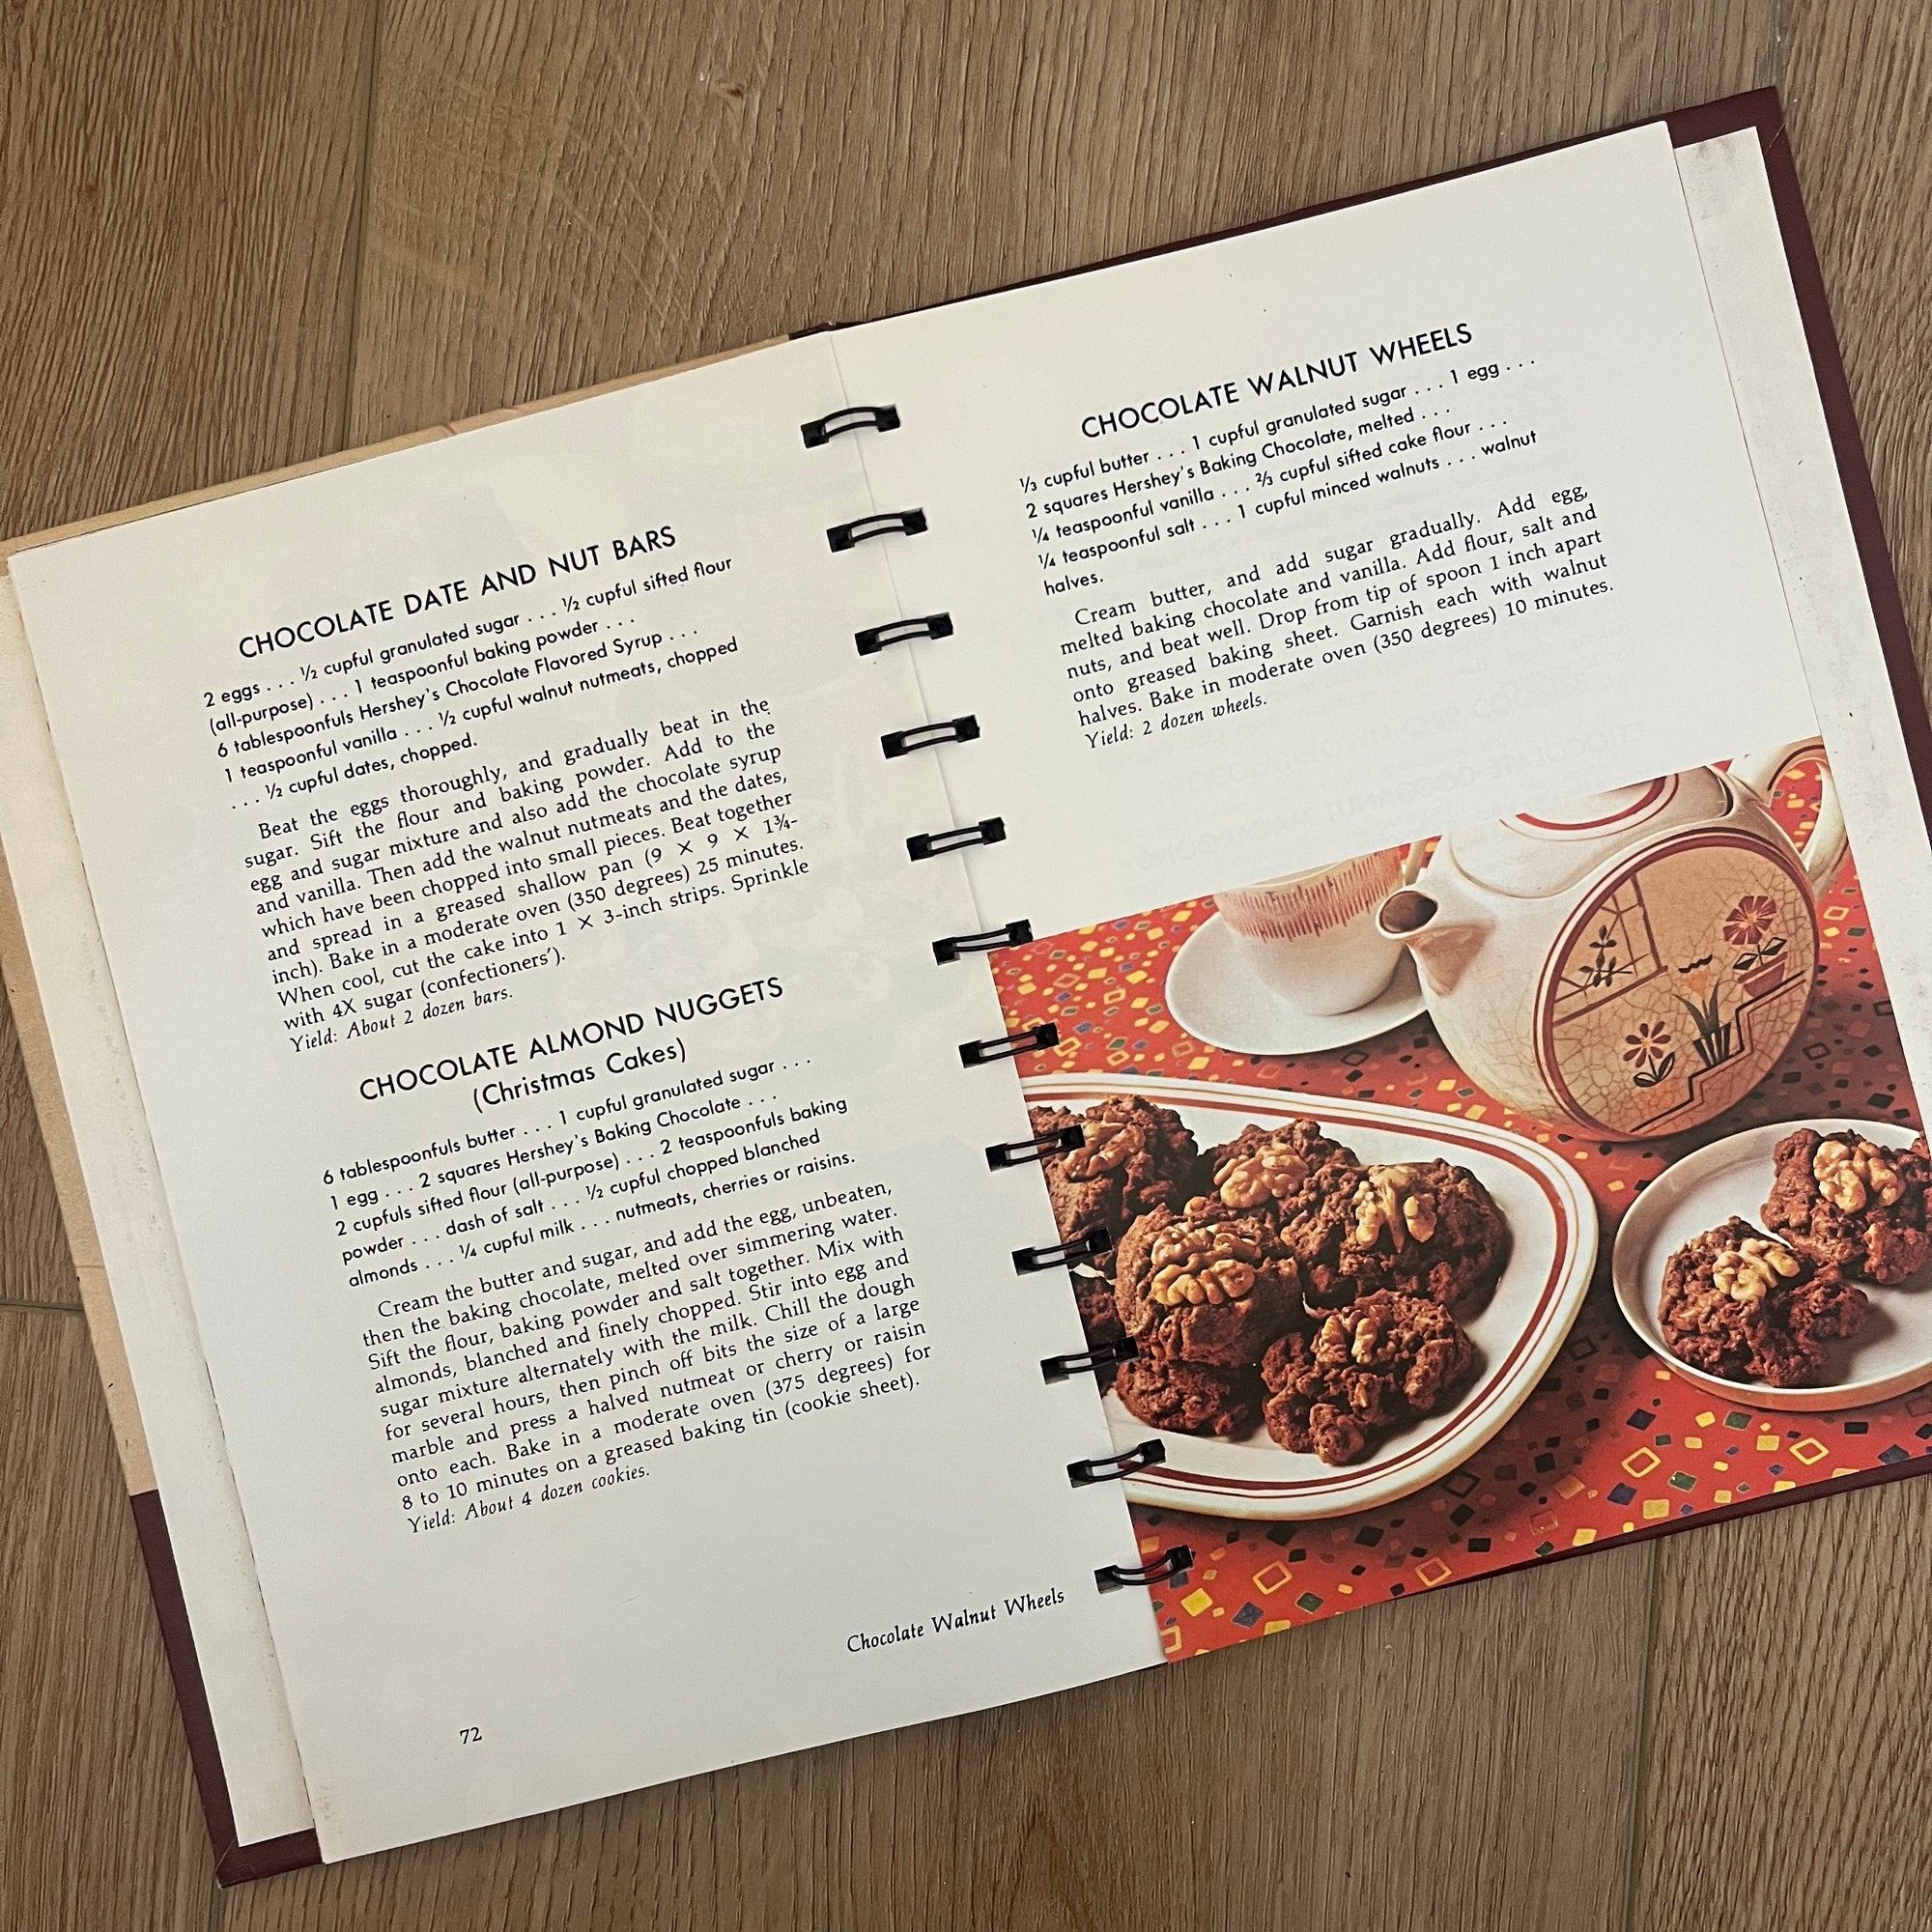 1971 Reprint of Hershey’s 1934 Cookbook